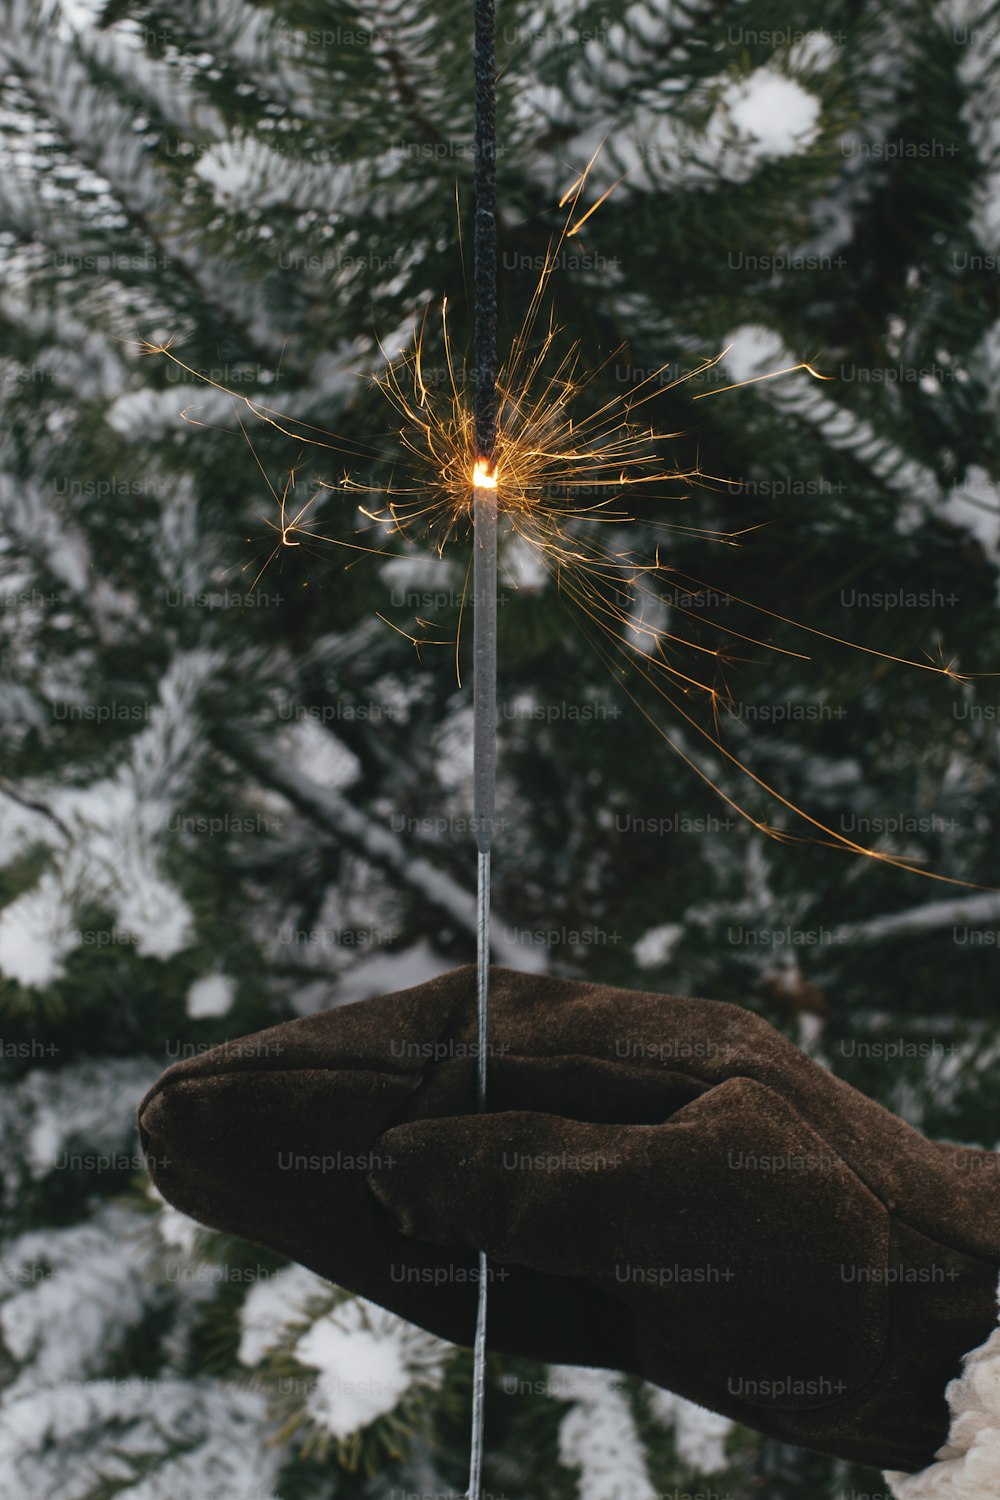 ¡Feliz Año Nuevo!  Mano de la mujer en manopla elegante con fuegos artificiales brillantes en el fondo de las ramas de los pinos en la nieve en la noche. Mano sosteniendo bengala encendida. Momento mágico atmosférico. ¡Felices Fiestas!